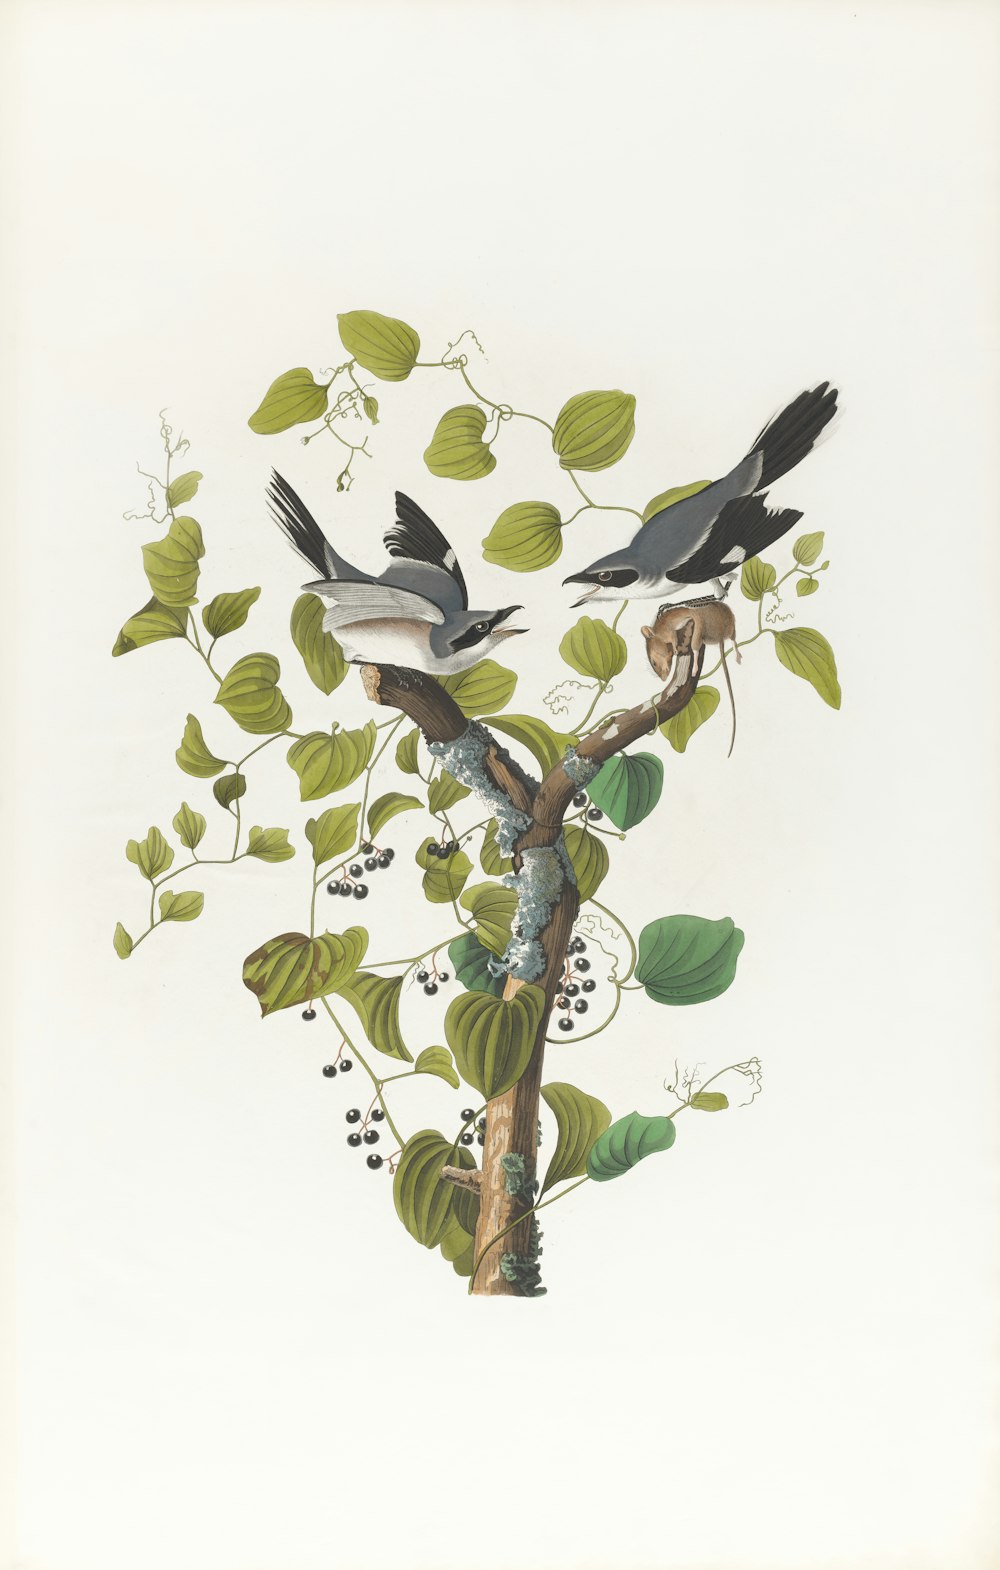 木の枝にとまる2羽の鳥の絵